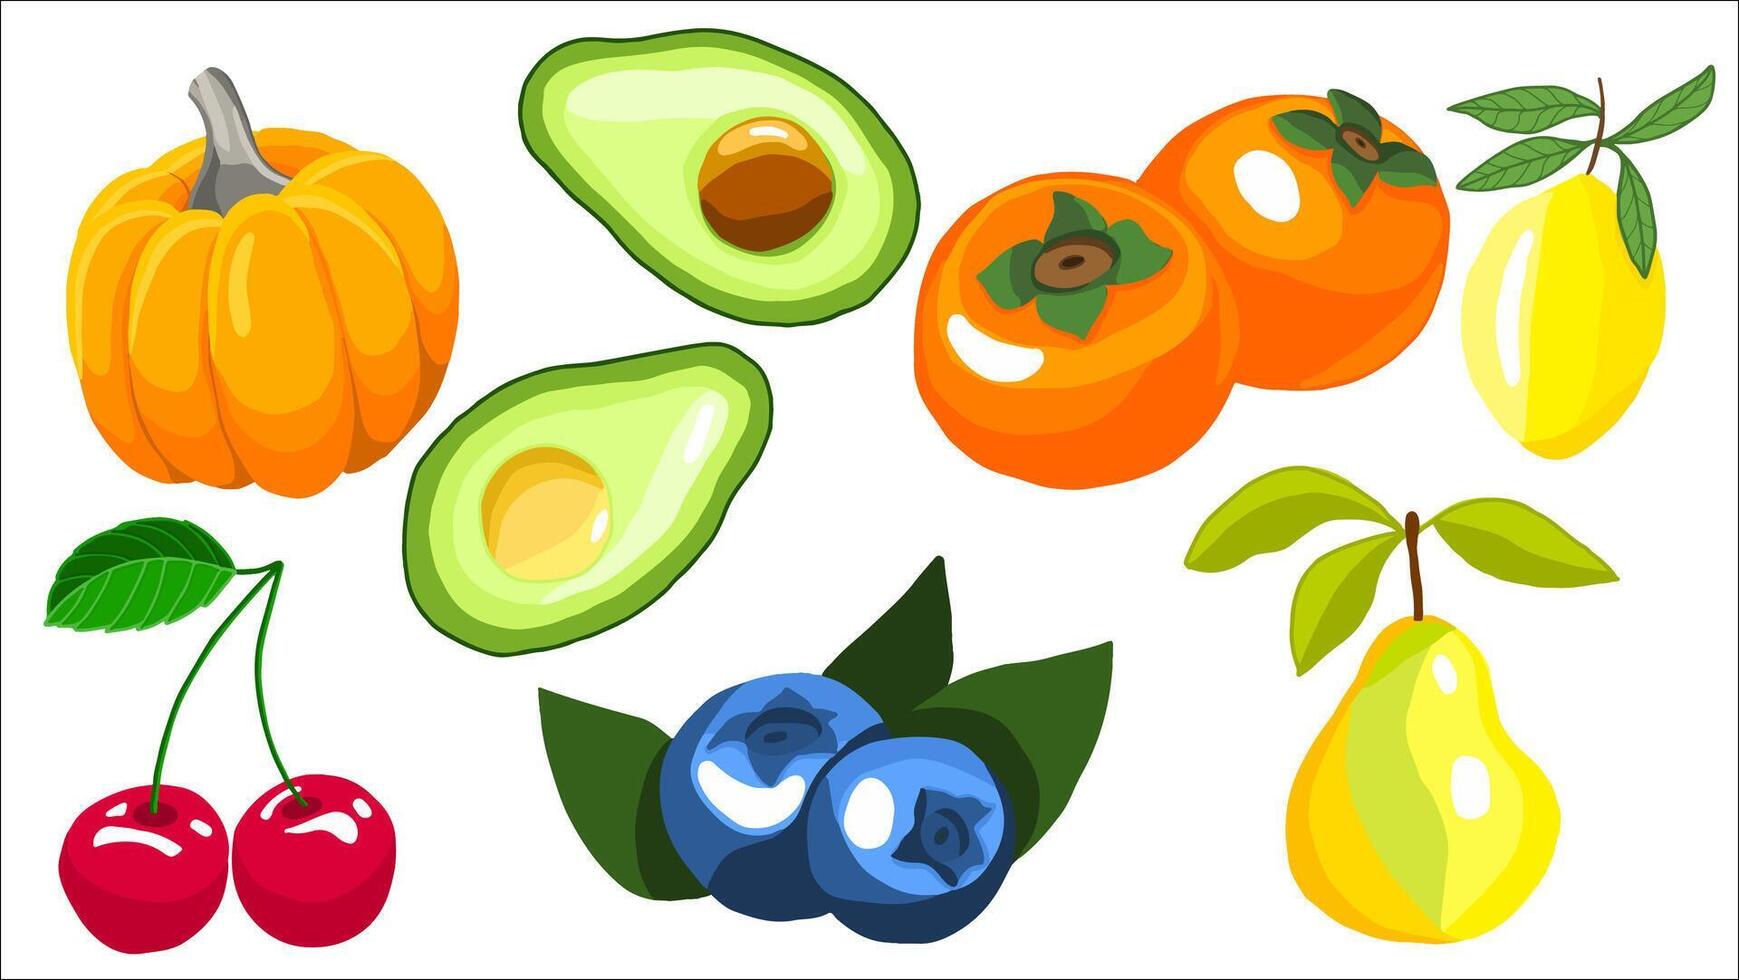 clasificado Fresco frutas y vegetales ilustración presentando calabaza, aguacates, y bayas vector